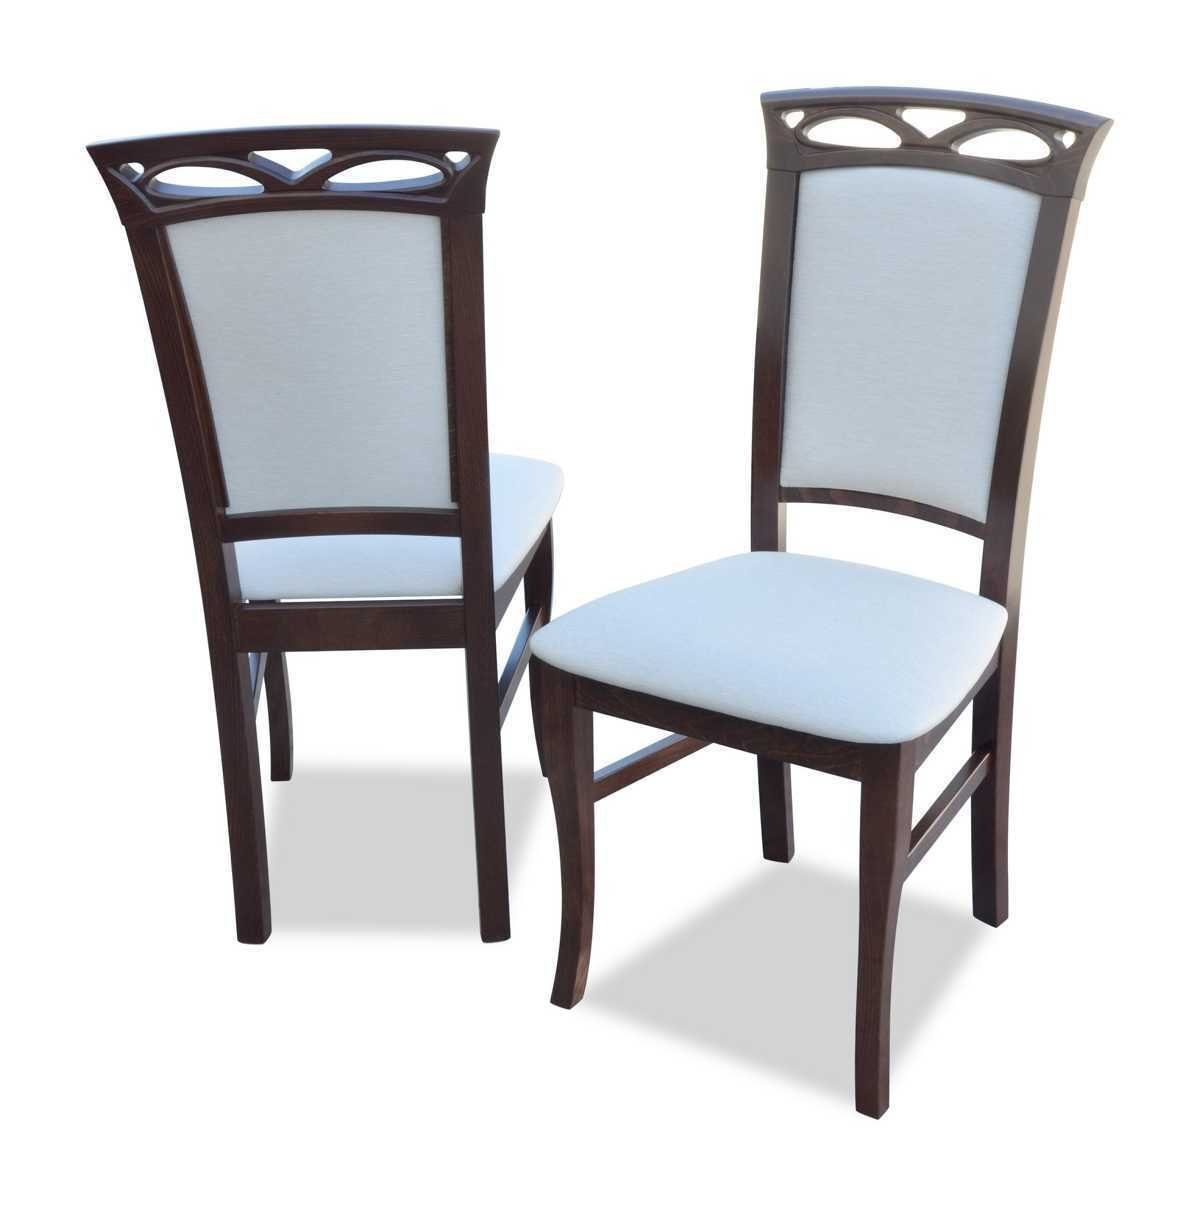 St) JVmoebel Stühle Neu Möbel Luxus Design Stuhl (1 Klassische Esszimmerstuhl Holz Holzstuhl